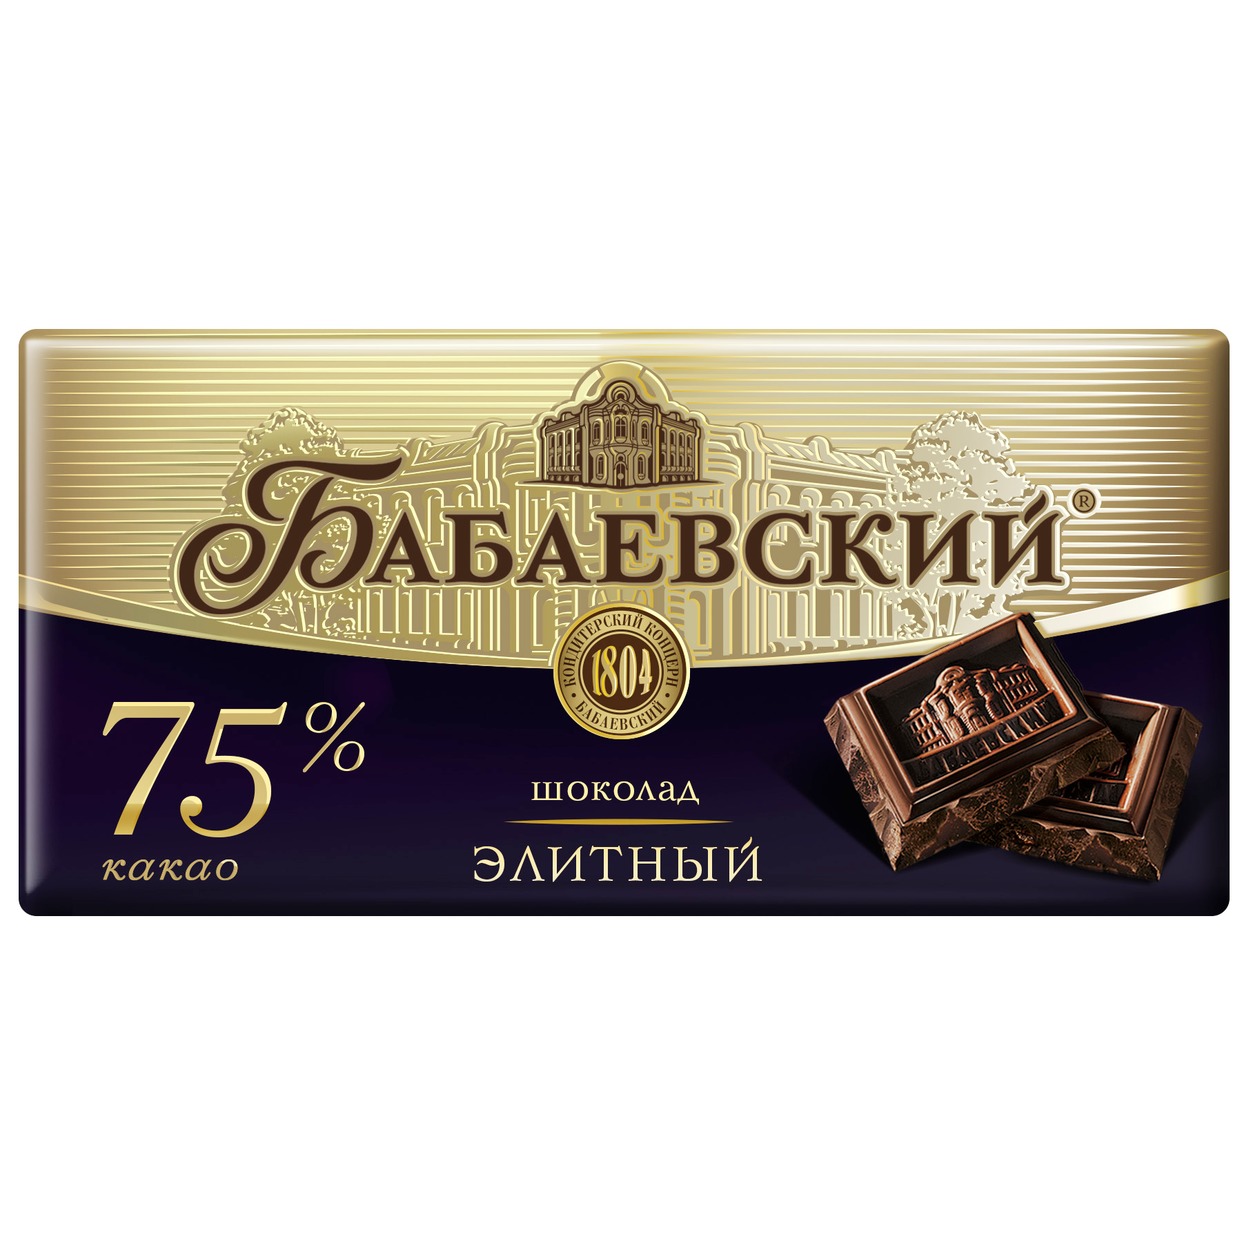 БАБАЕВ.Шоколад элит.75%какао 100г по акции в Пятерочке